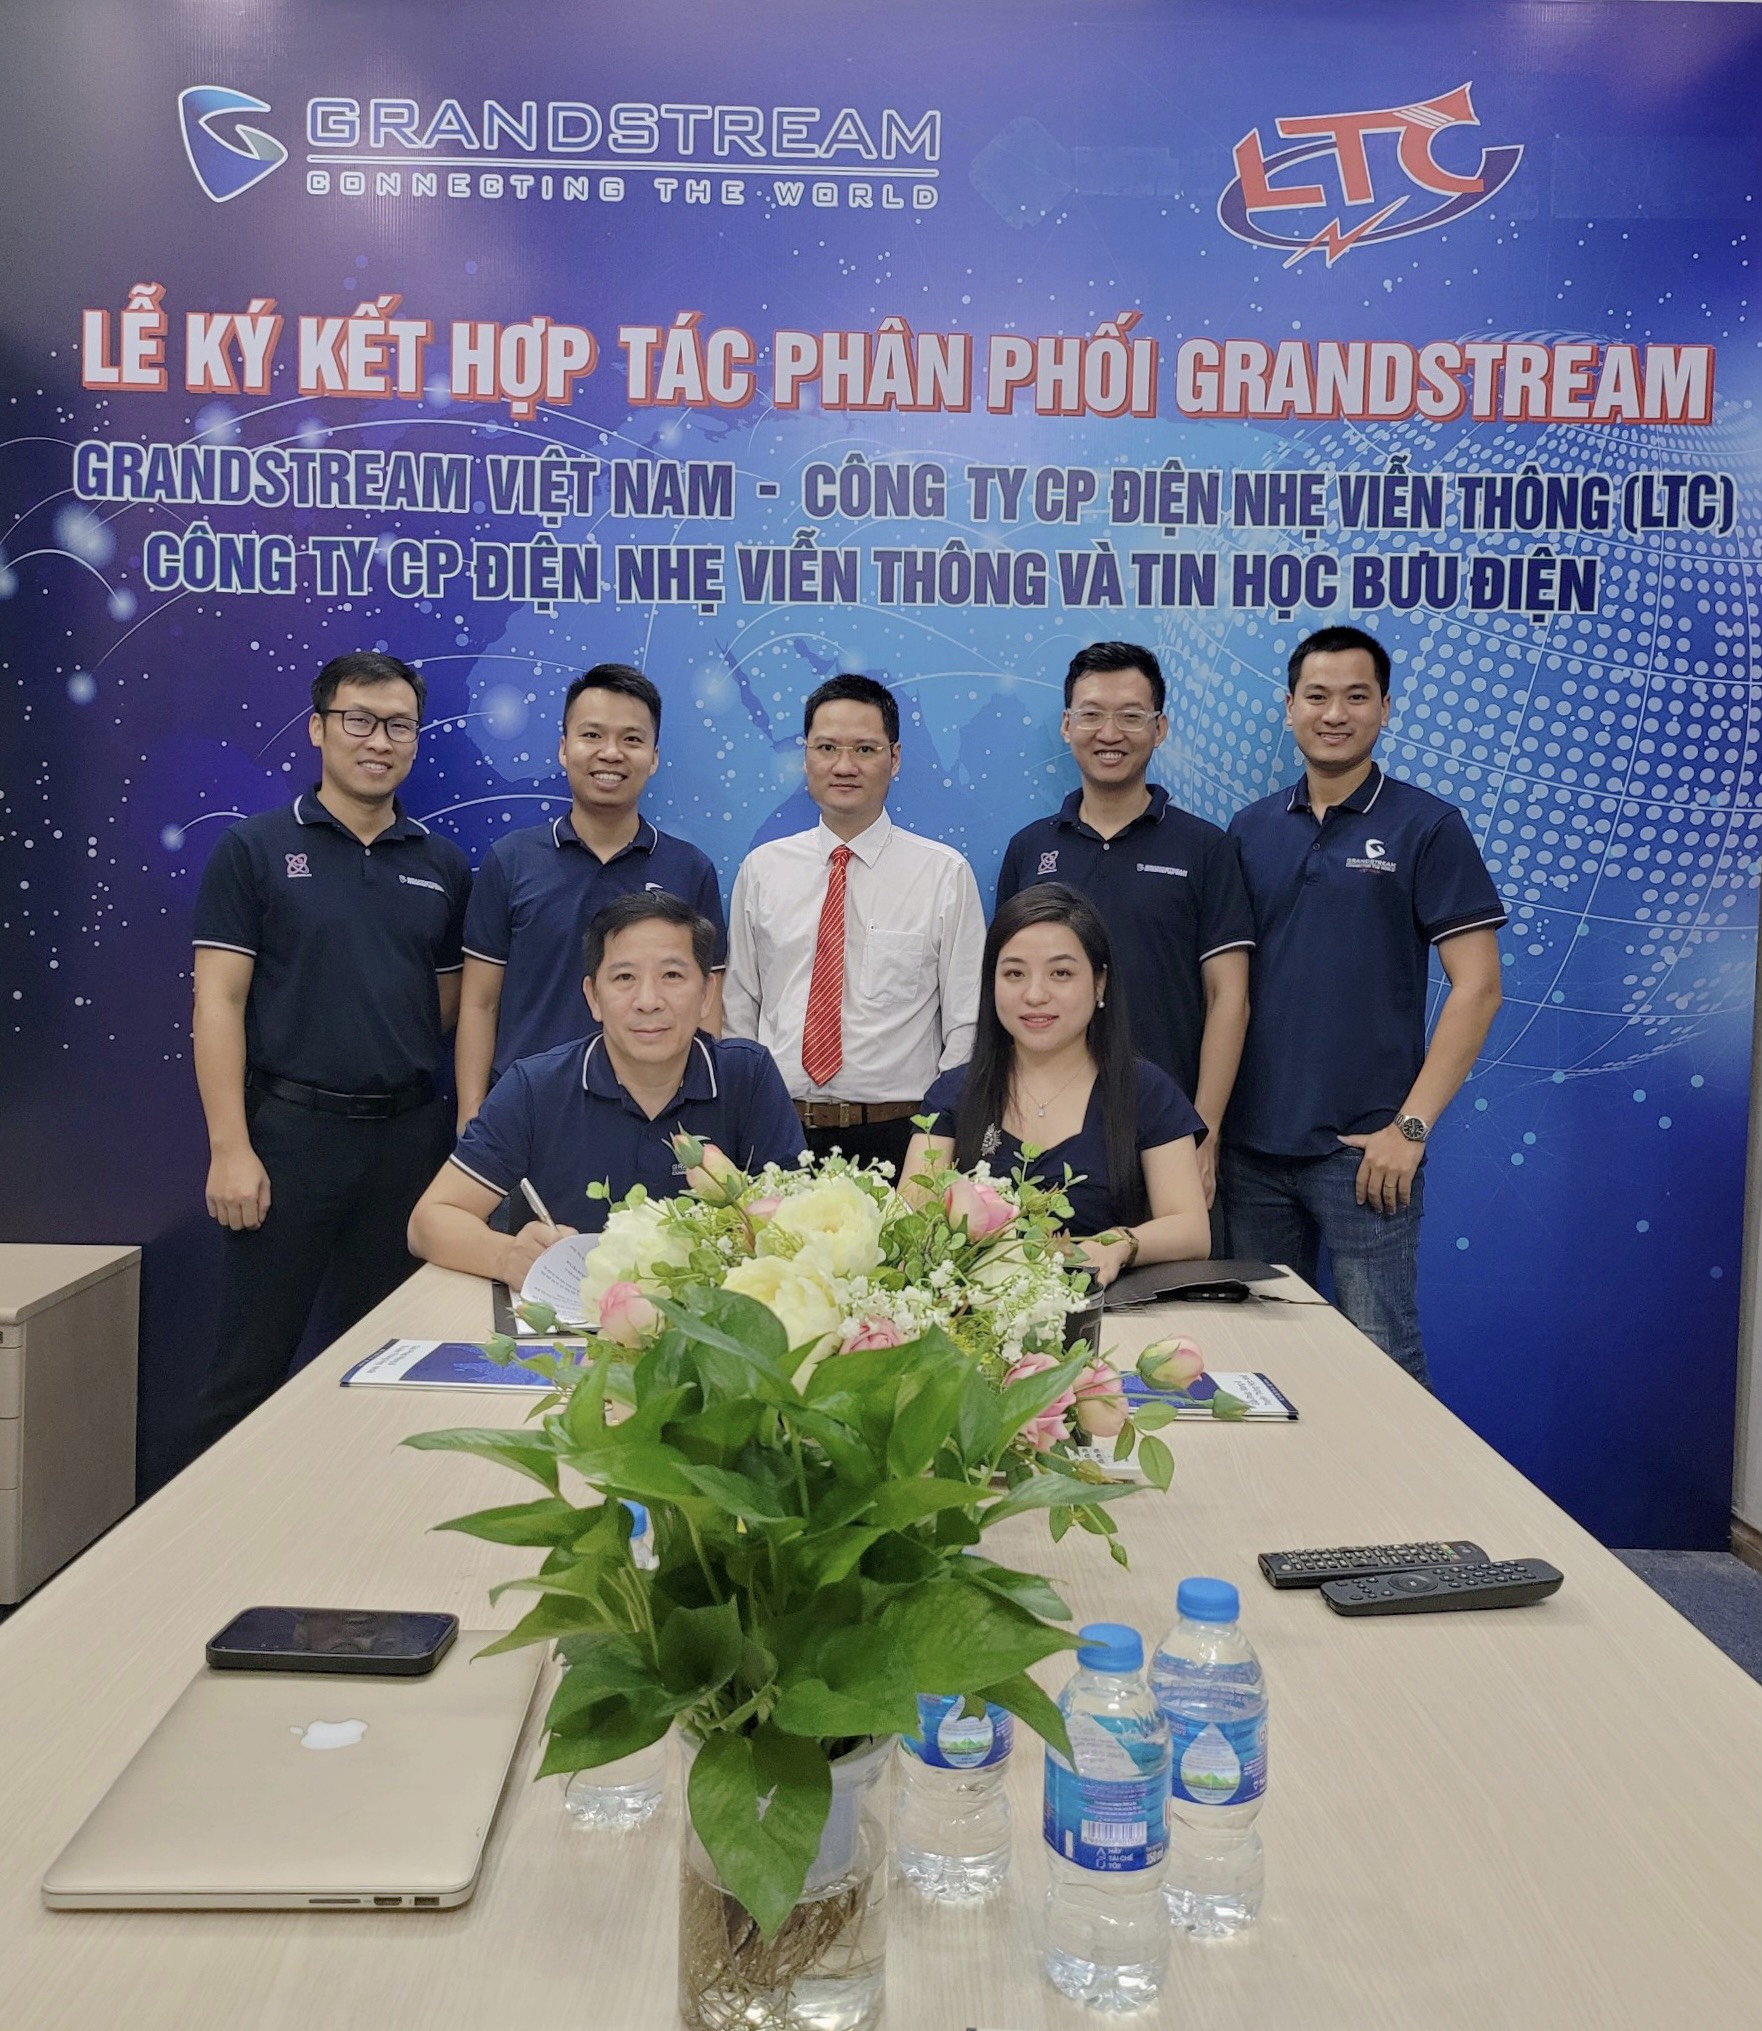 Lãnh đạo Công ty TNHH Grandstream Việt Nam và Lãnh đạo Công ty CP Điện nhẹ Viễn thông (LTC) ký kết hợp tác chiến lược phát triển giải pháp hạ tầng VT&CNTT